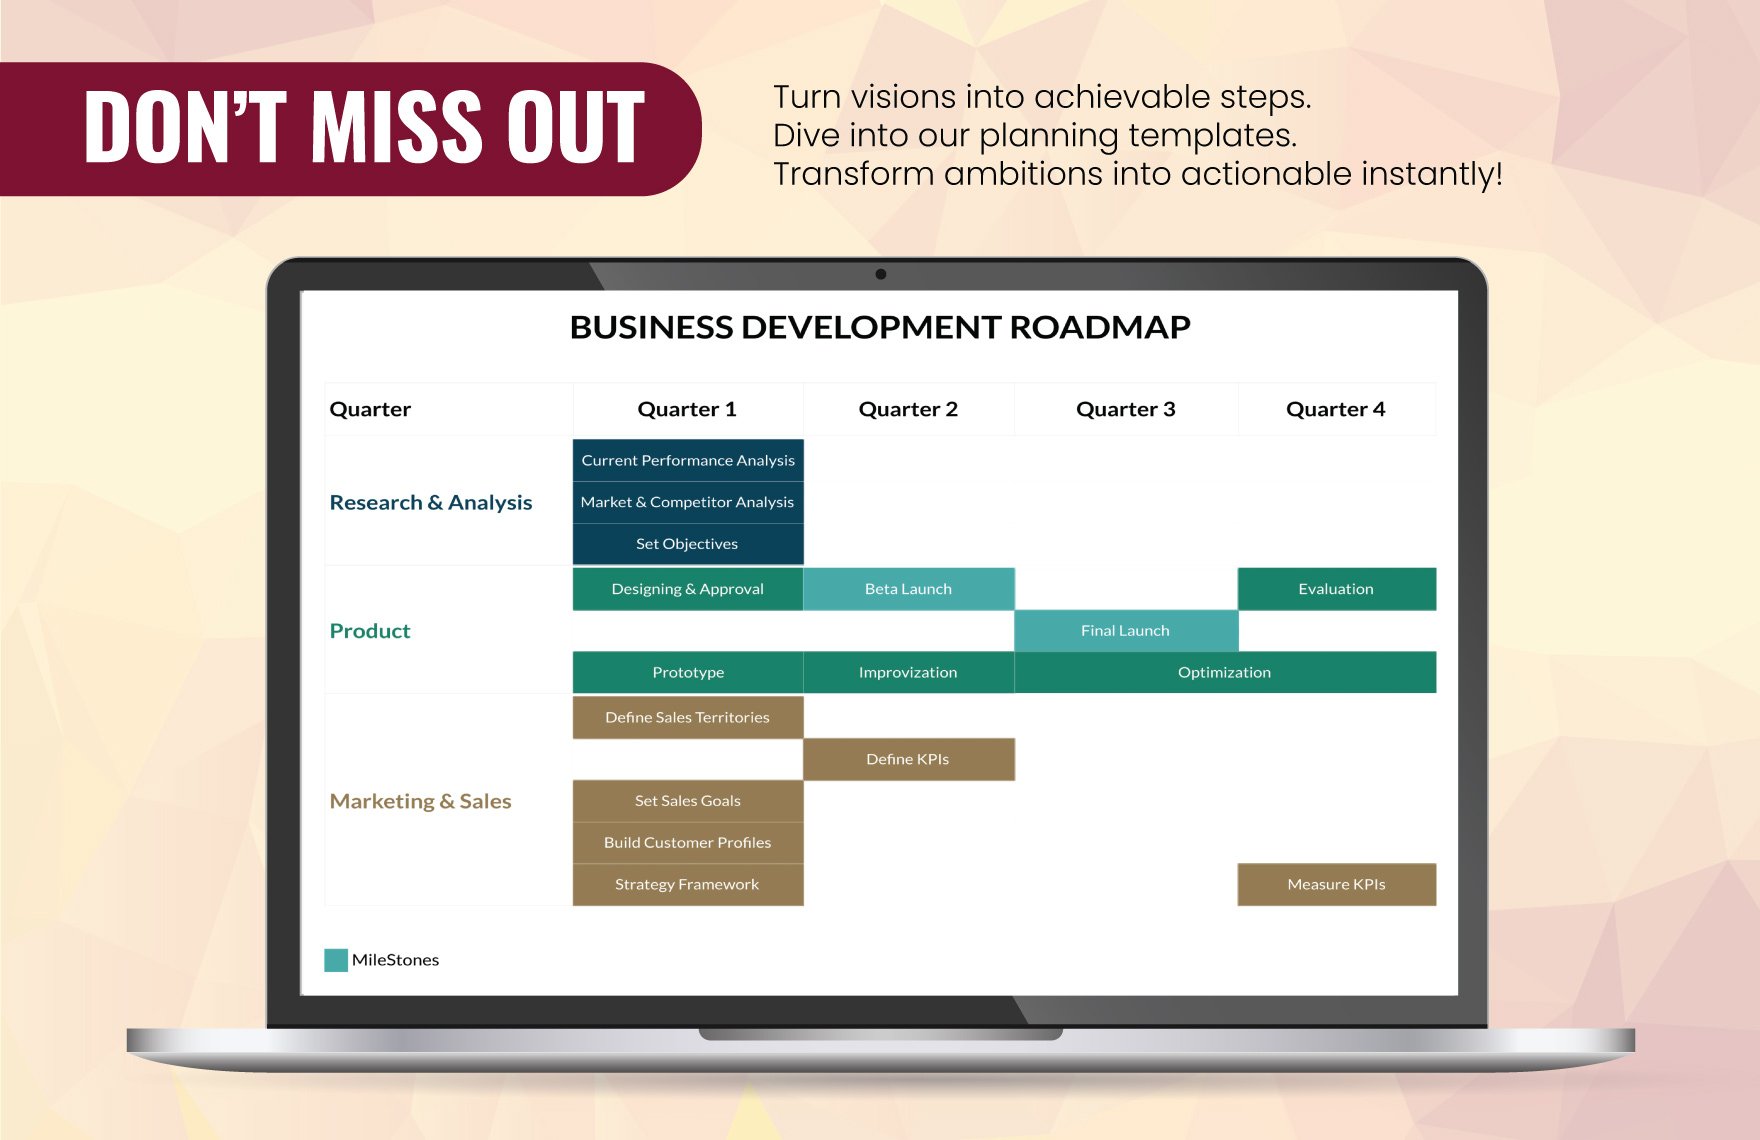 Business Development Plan Roadmap Template